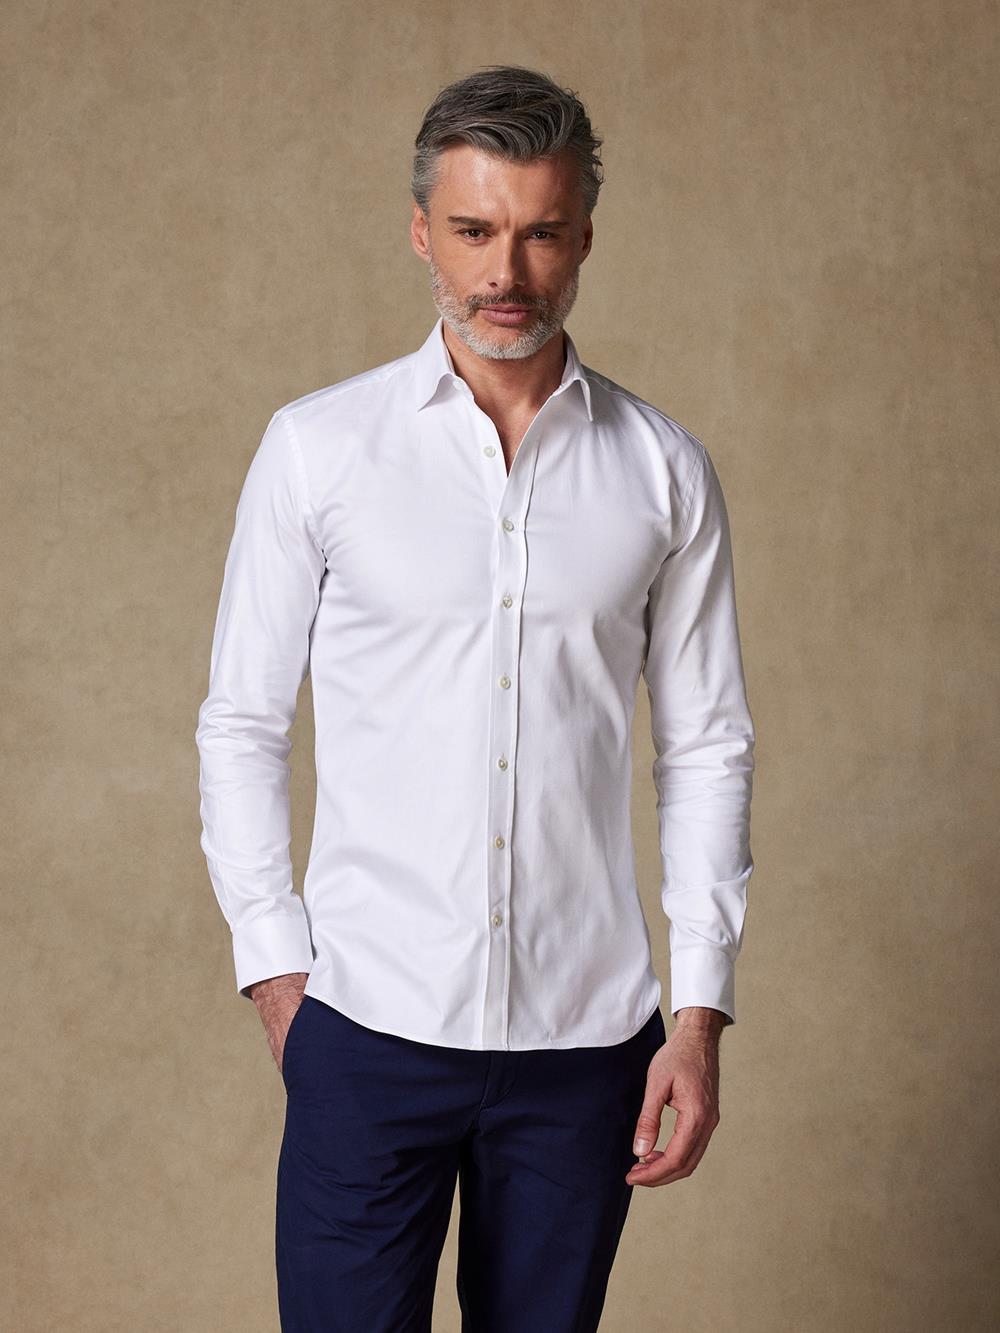 Royal white oxford shirt